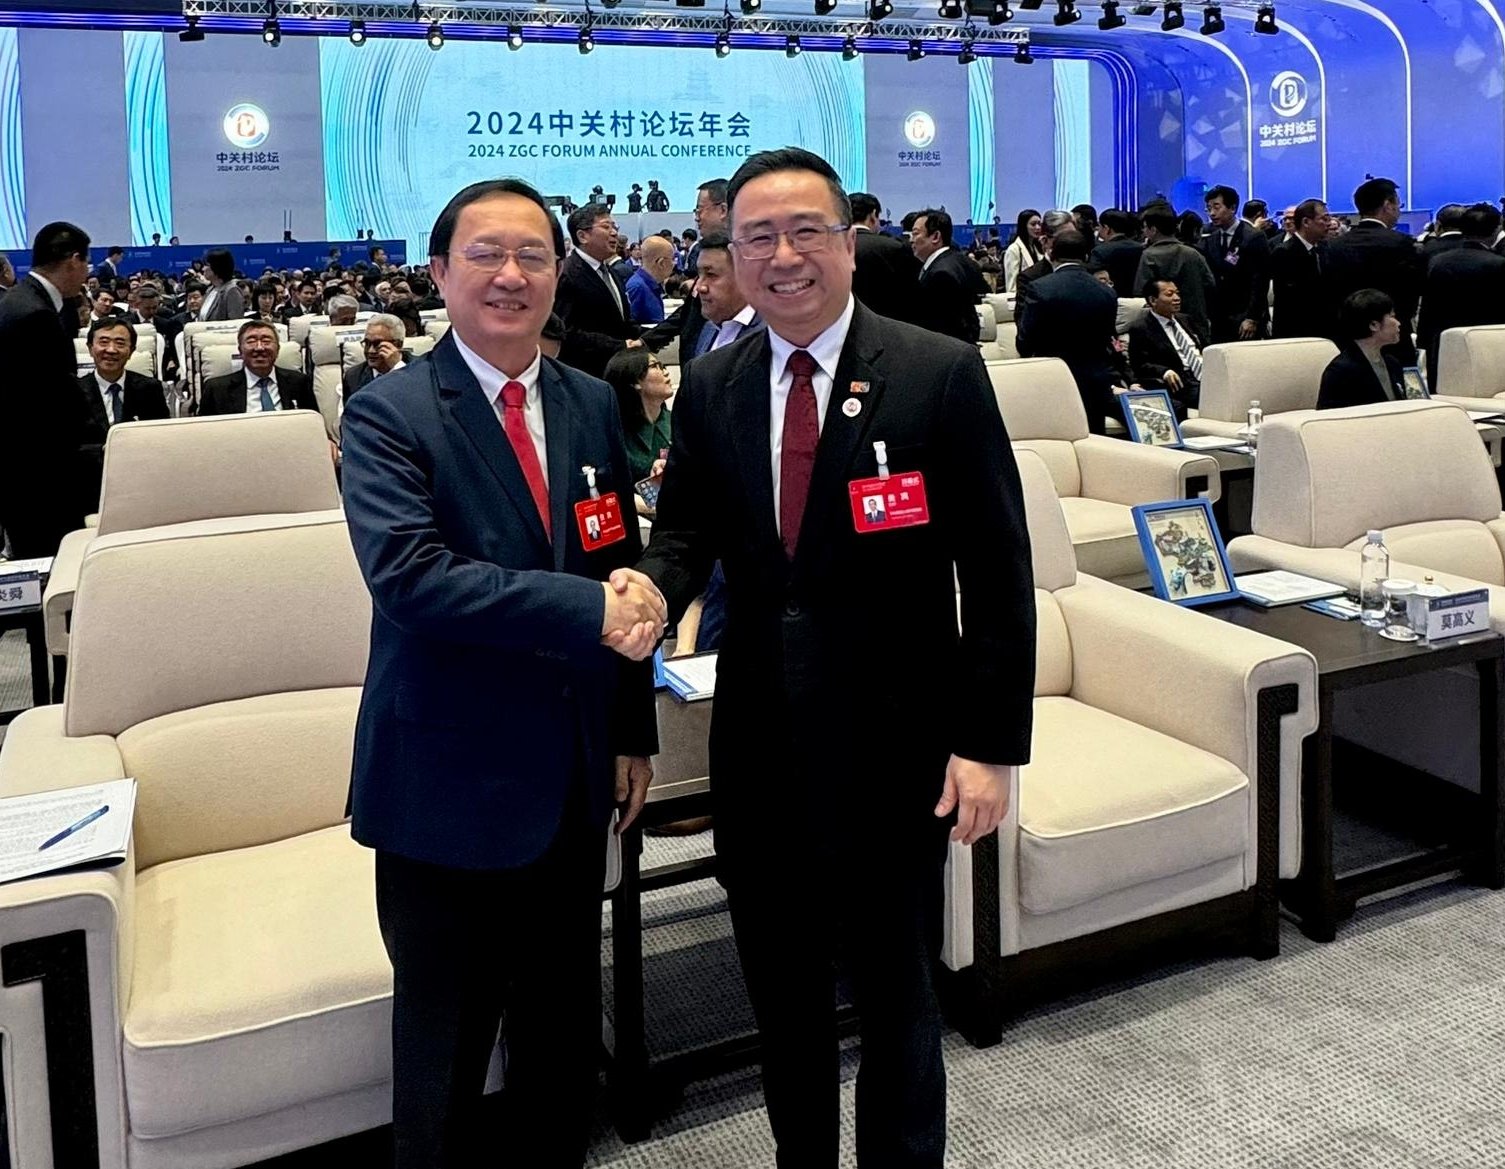 马来西亚科艺部长郑立慷（右）与越南科技部部长黄清达相见欢，希望两国未来在科技发展上有合作机会。